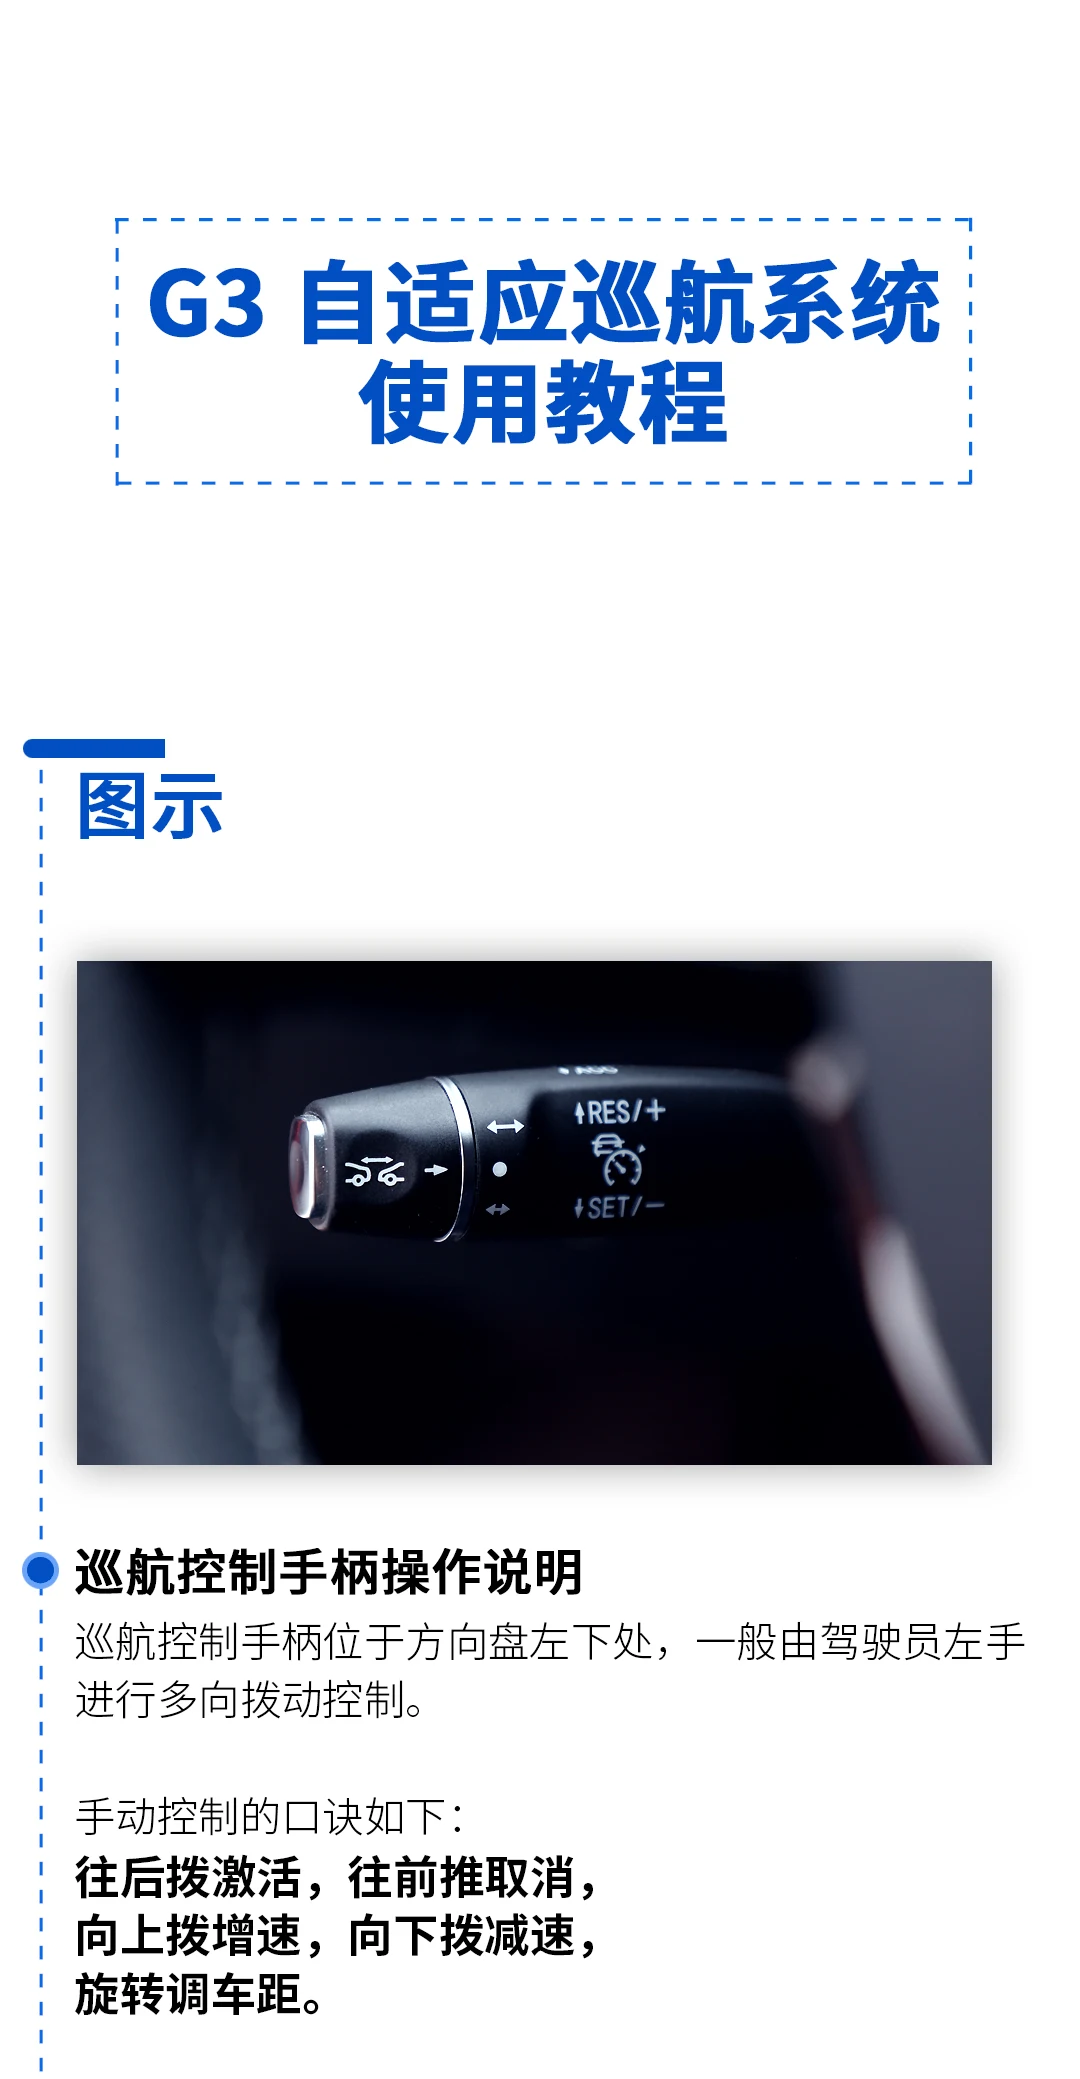 模板-充电方向-用车-使用说明-小鹏G3自适应巡航系统_01.jpg